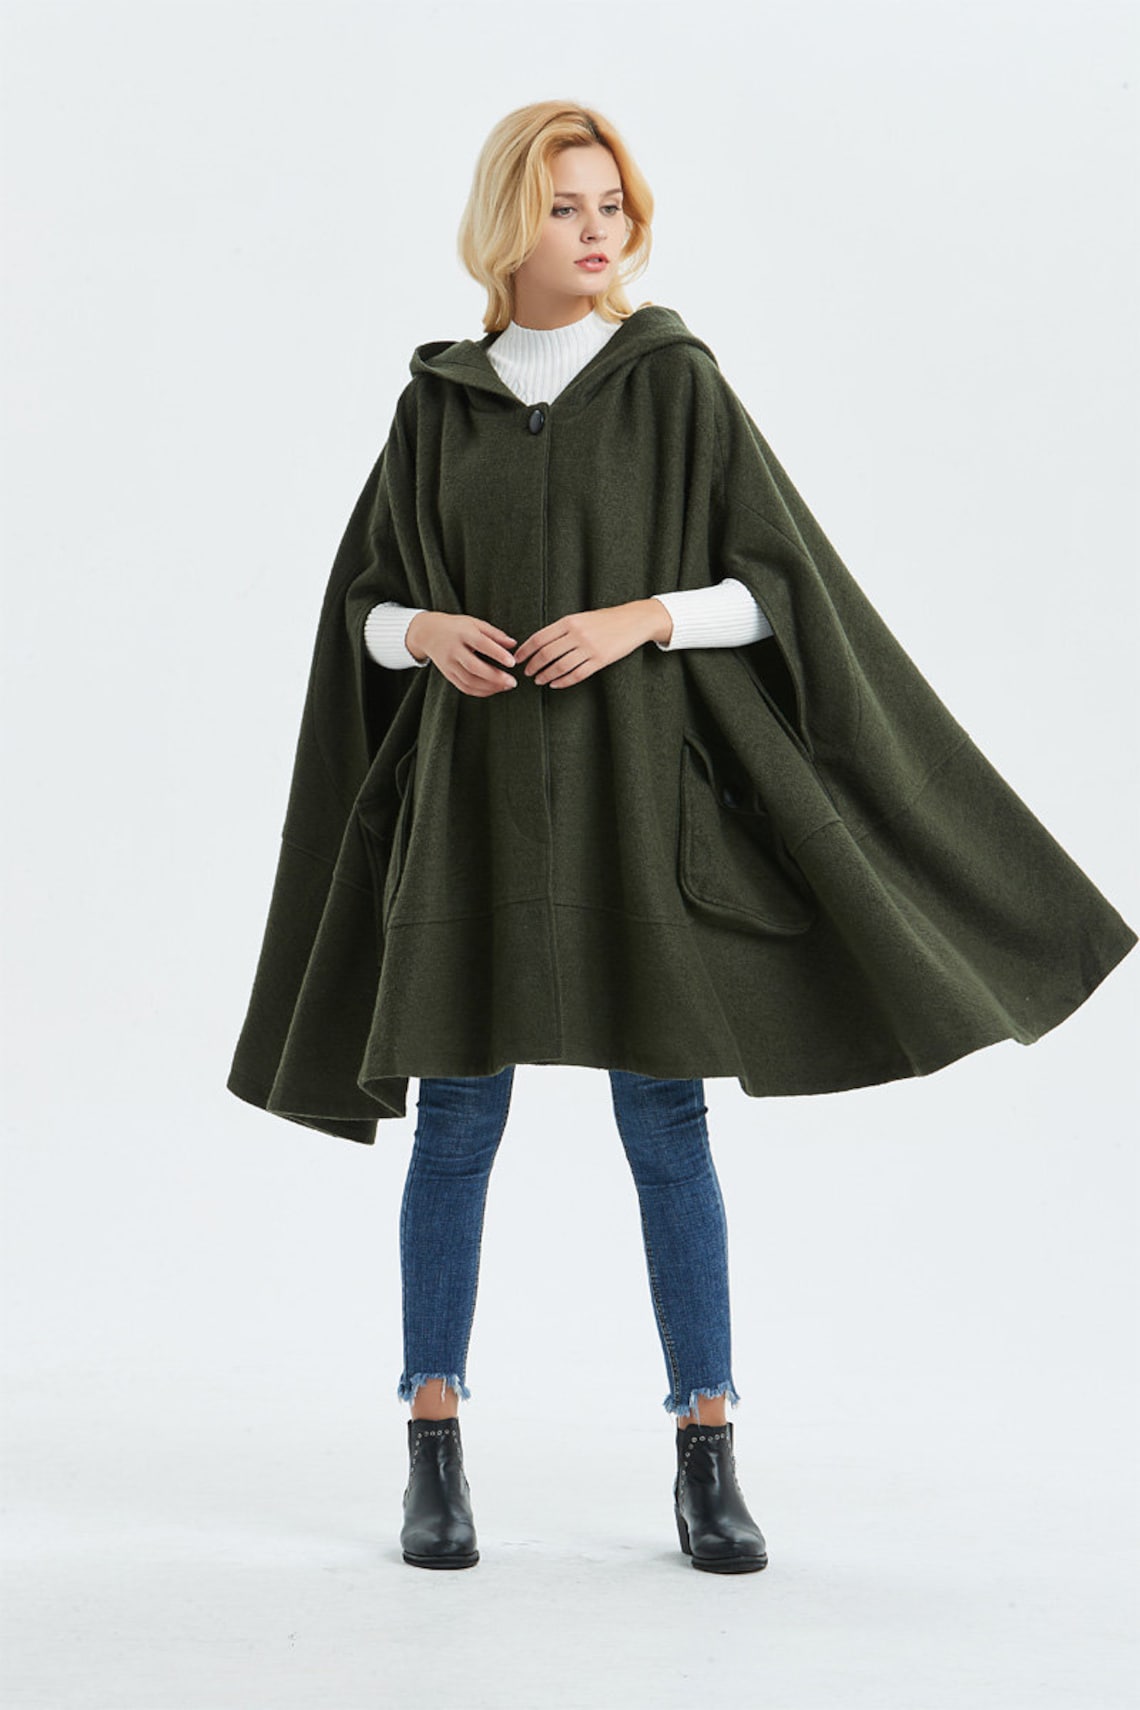 Long wool cloak Hooded Wool Coat Cloak warm winter Cloak | Etsy